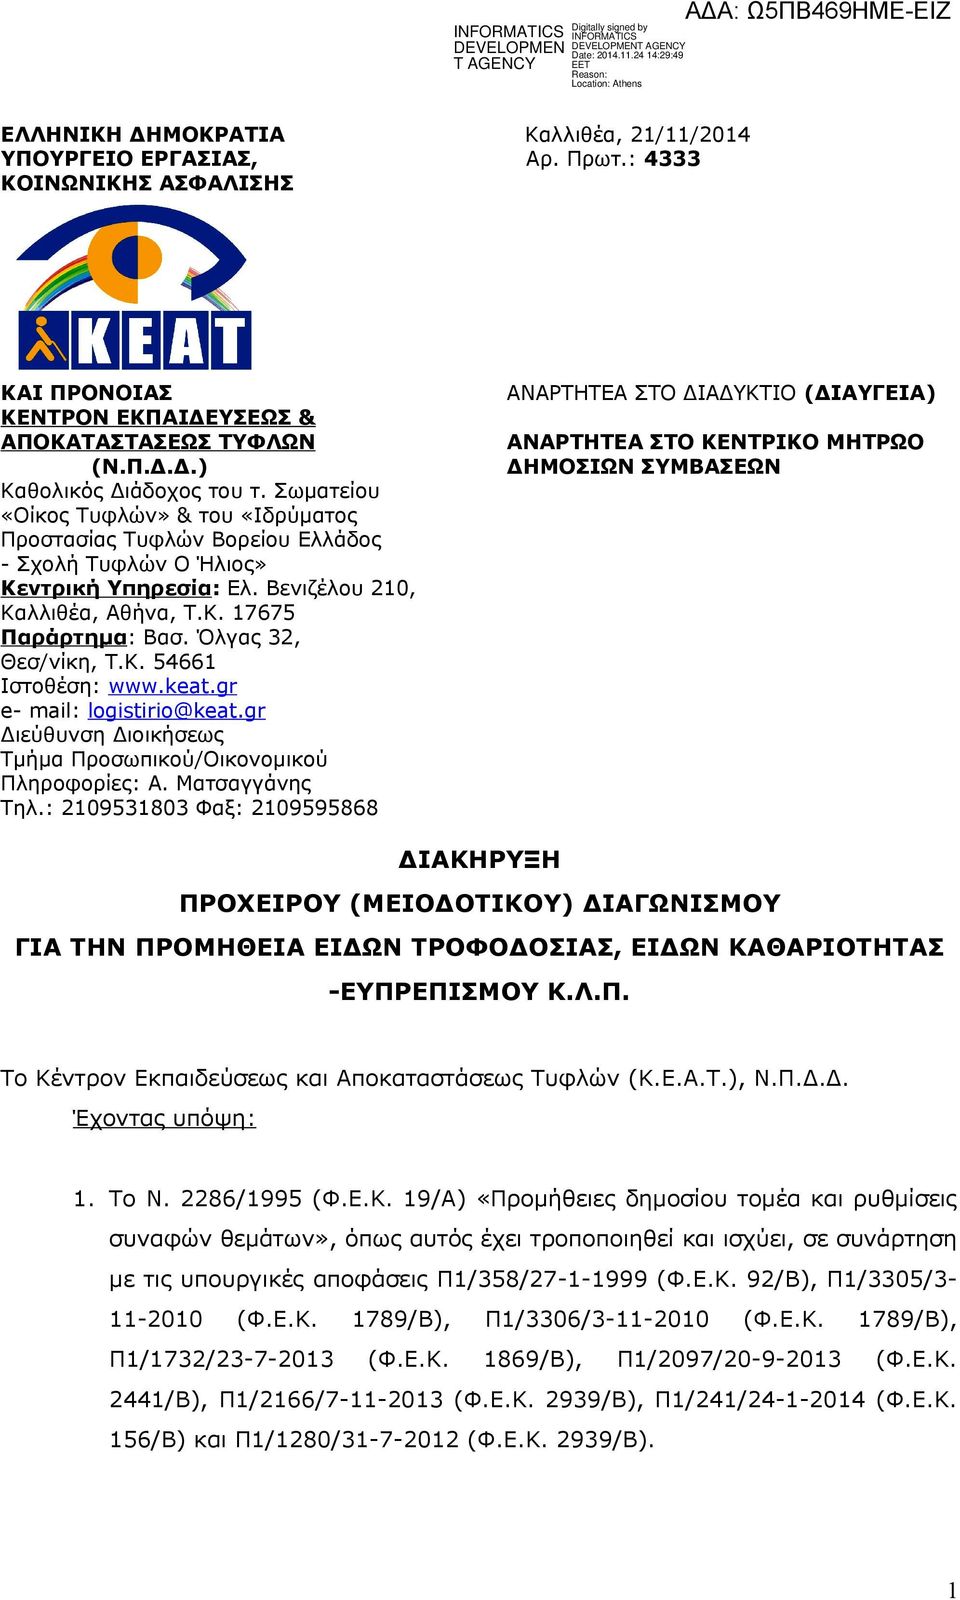 Όλγας 32, Θεσ/νίκη, Τ.Κ. 54661 Ιστοθέση: www.keat.gr e- mail: logistirio@keat.gr Διεύθυνση Διοικήσεως Τμήμα Προσωπικού/Οικονομικού Πληροφορίες: Α. Ματσαγγάνης Τηλ.